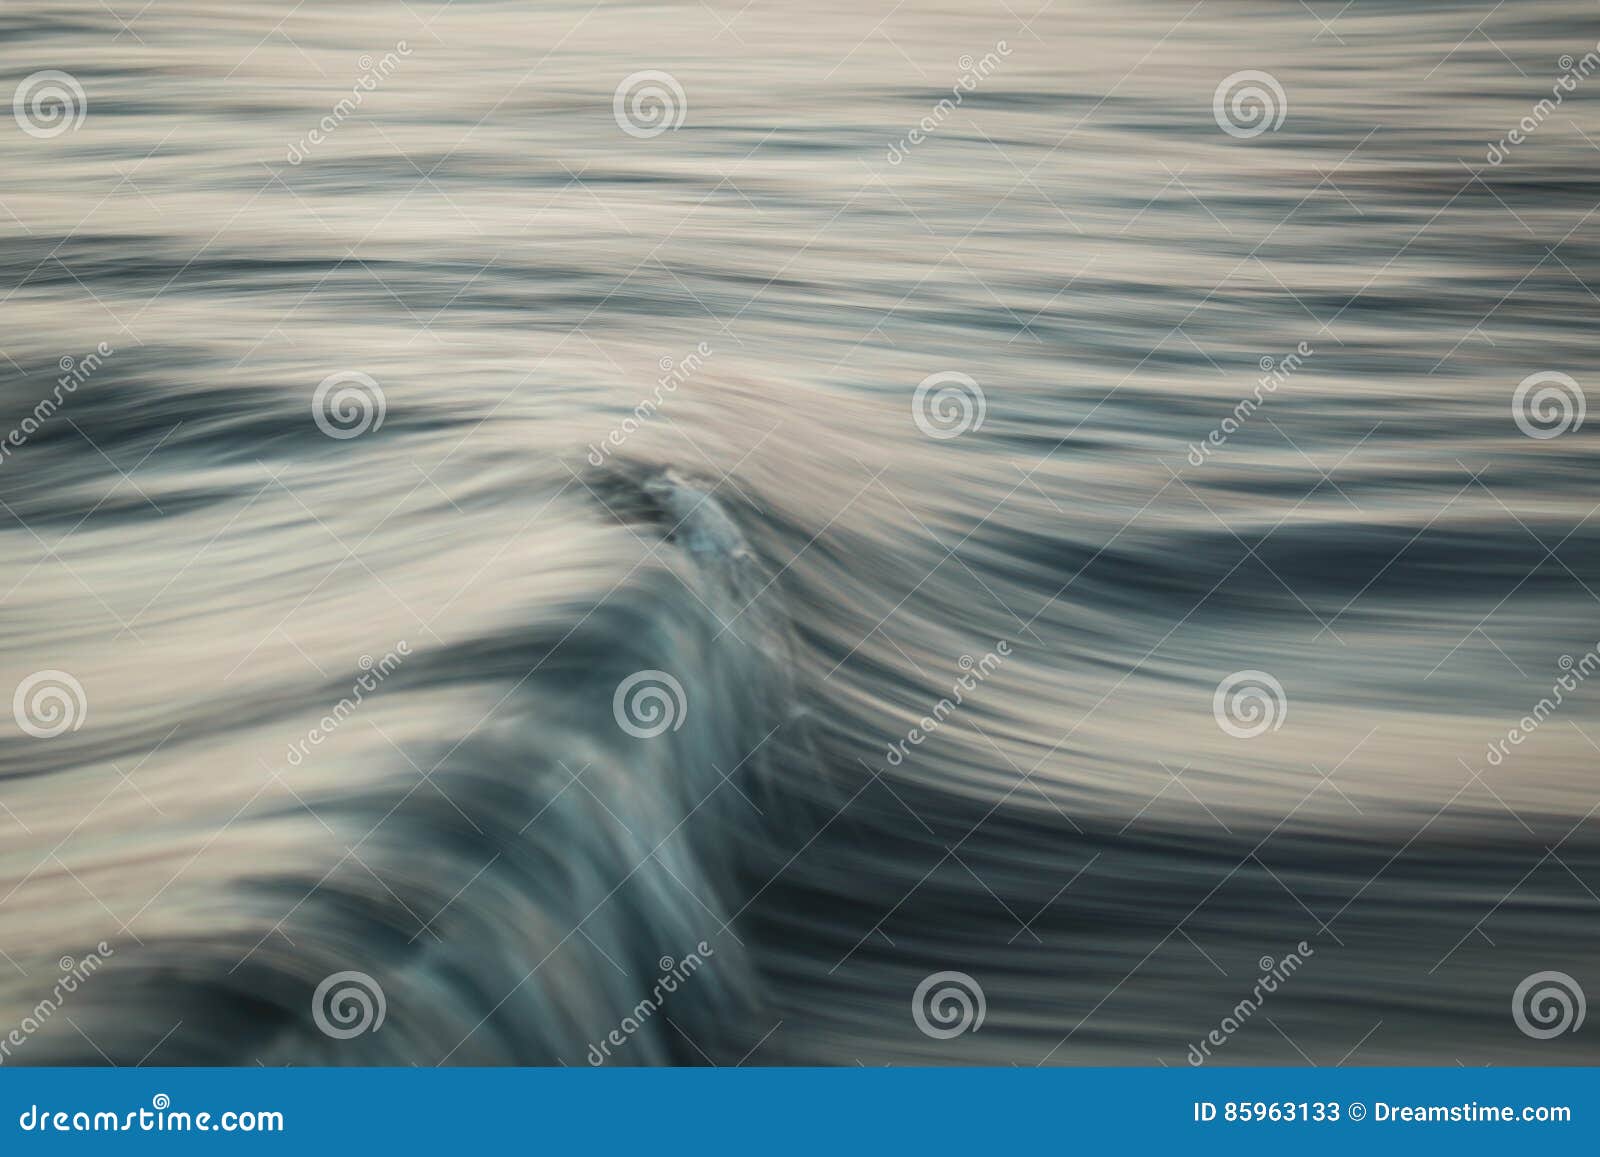 silk wave